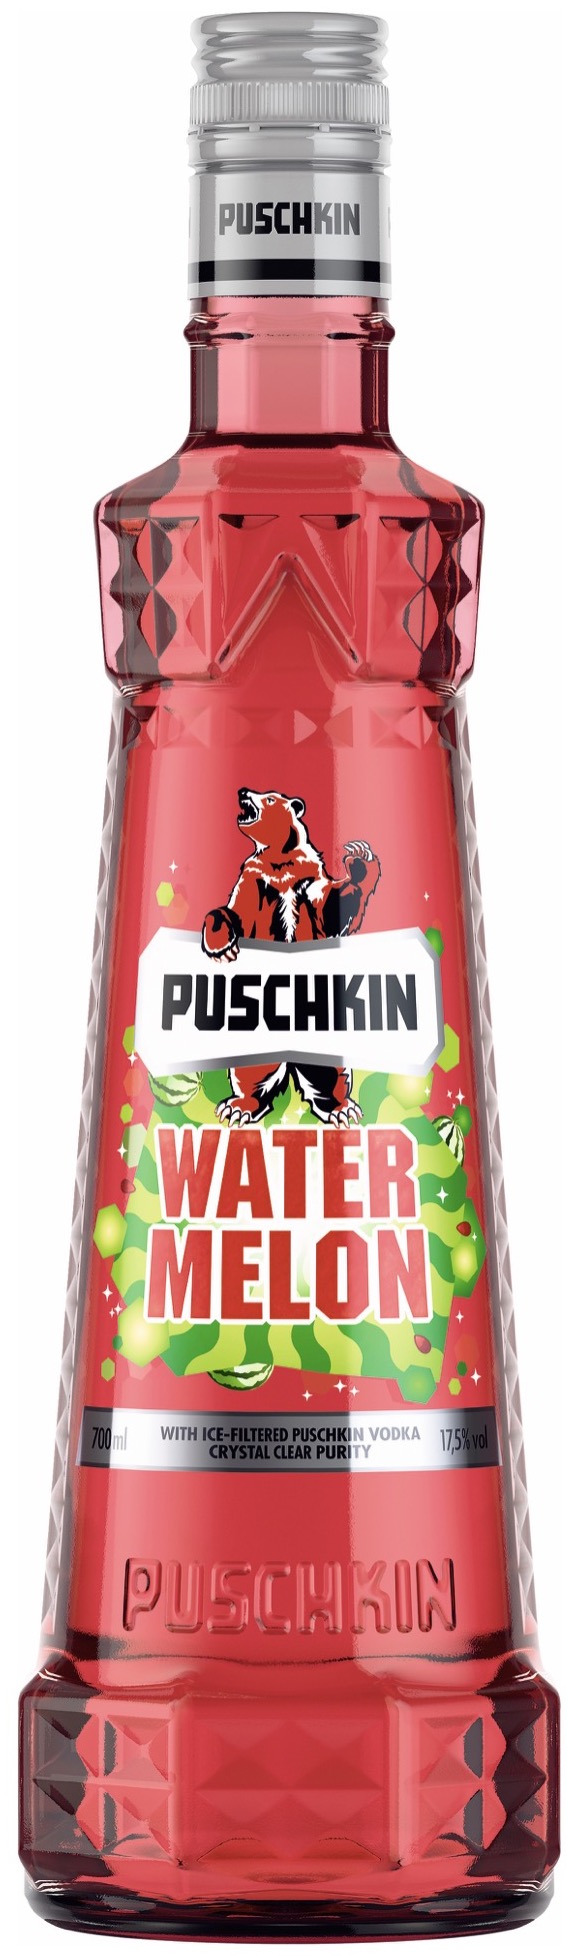 Puschkin Watermelon Vodka 17,5 % vol. 0,7L